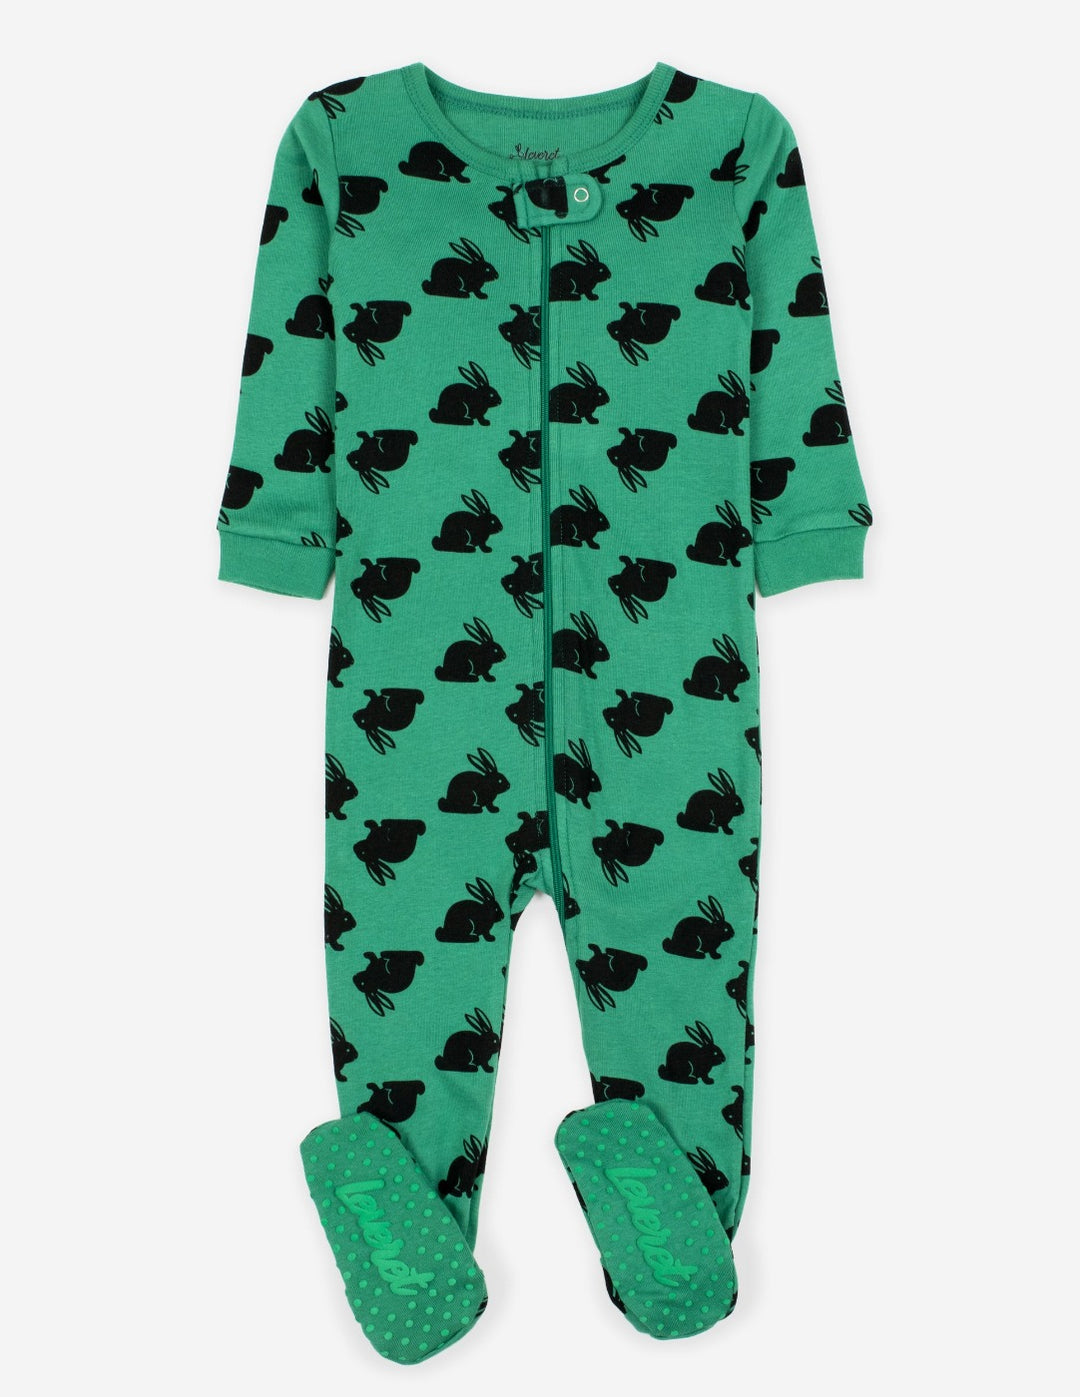 Easter Pajamas – Matching Pajamas